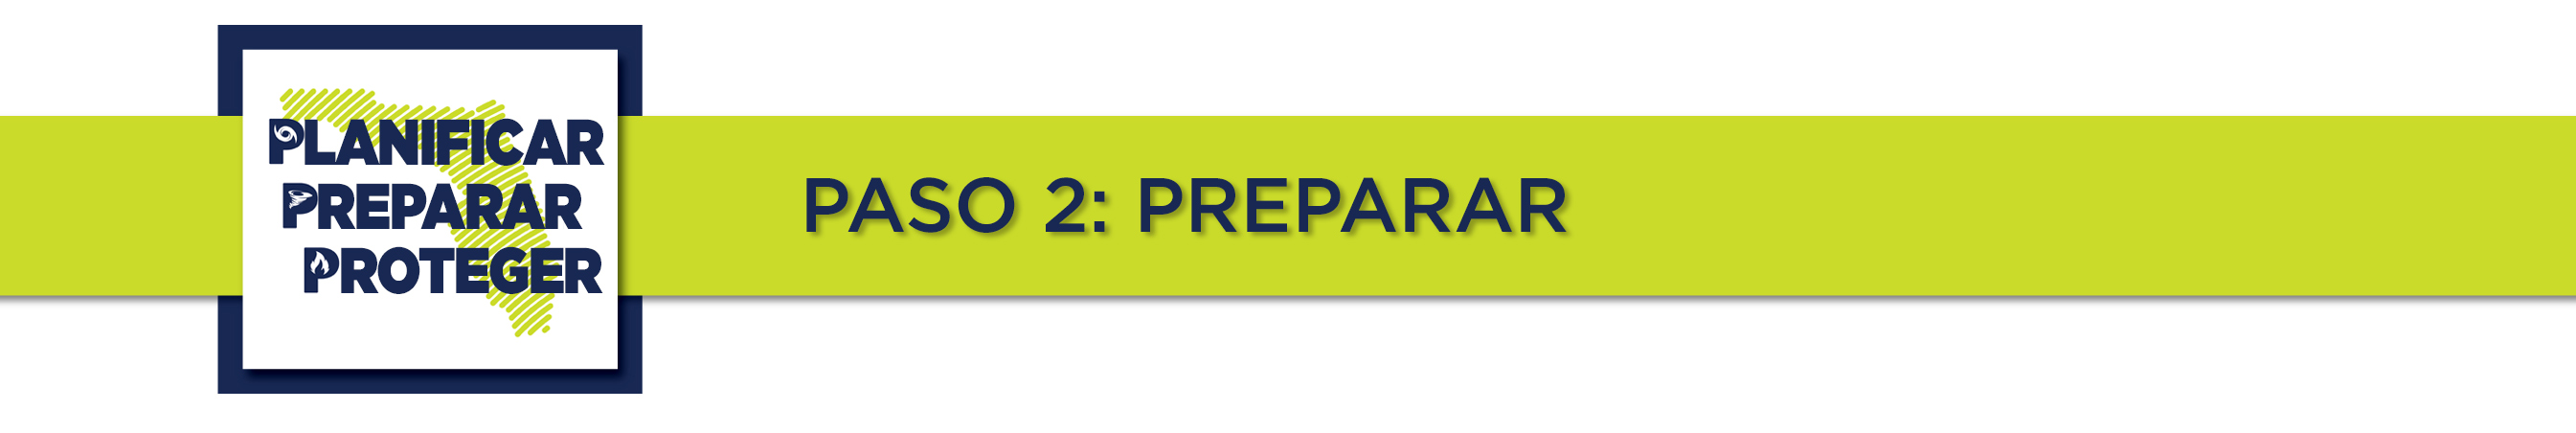 Planificar, Preparar, Proteger: PASO 2: PREPARAR